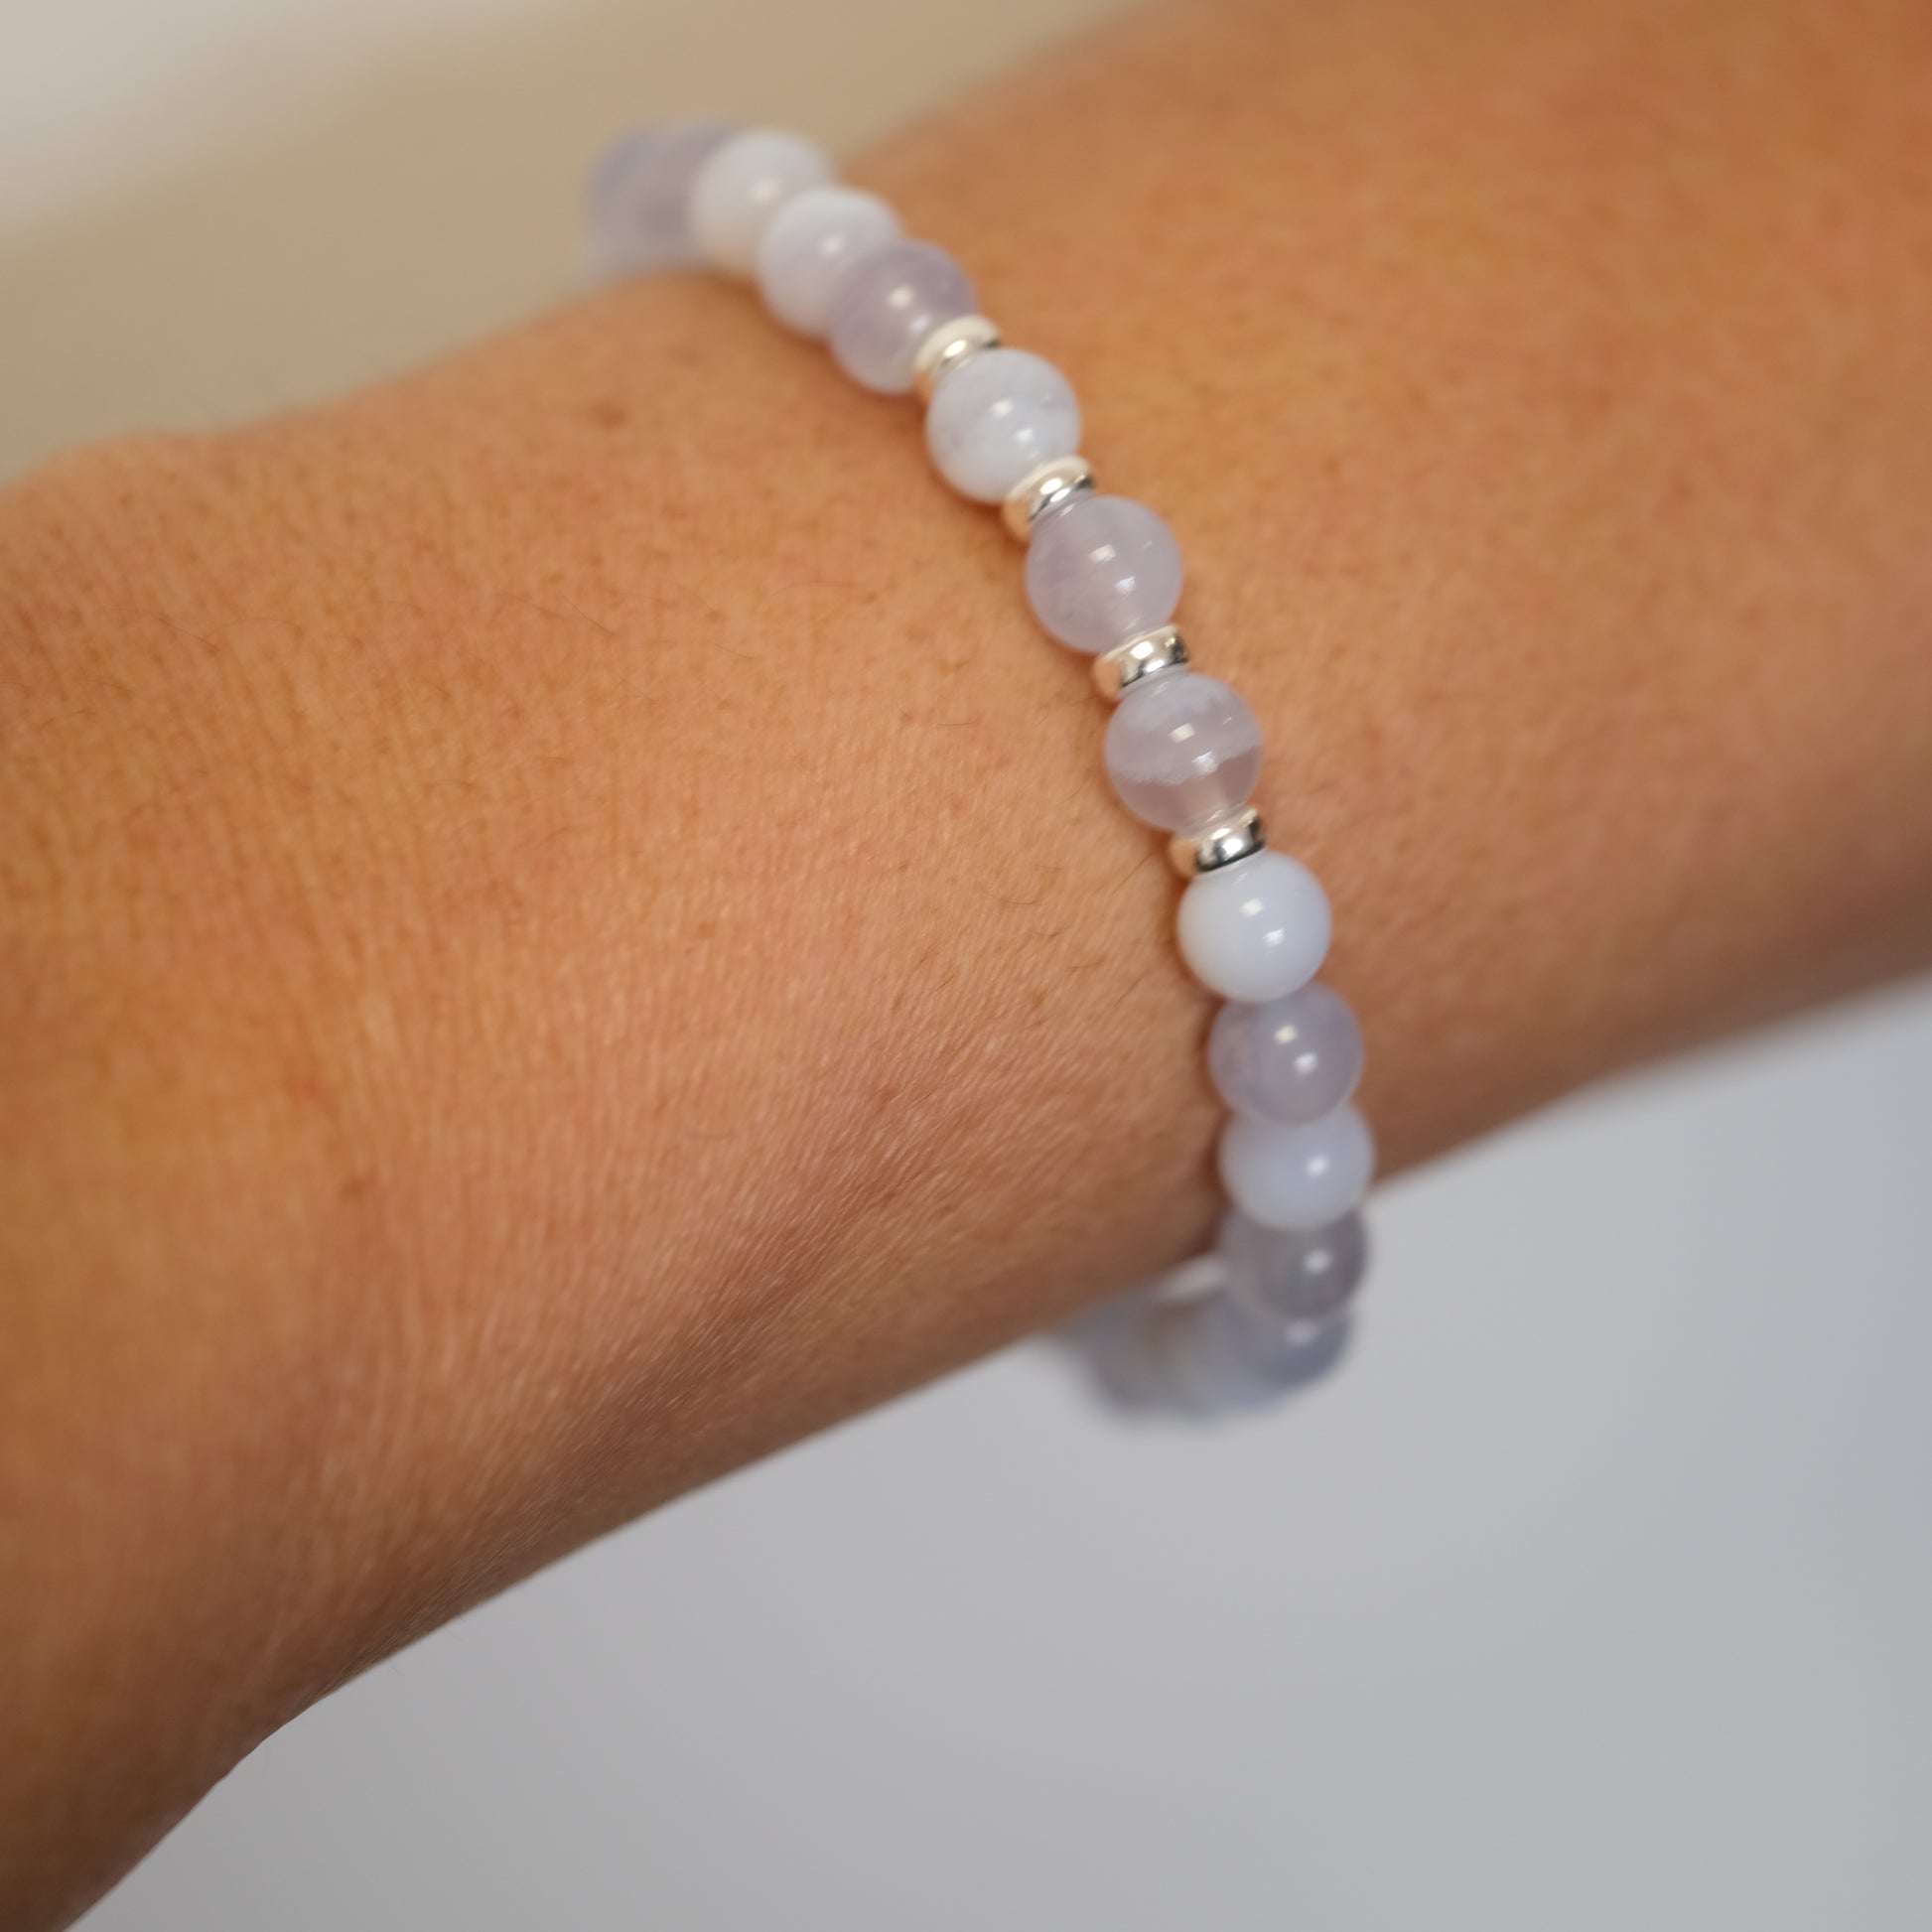 Blue lace agate gemstone bracelet in 6mm beads worn on a model's wrist